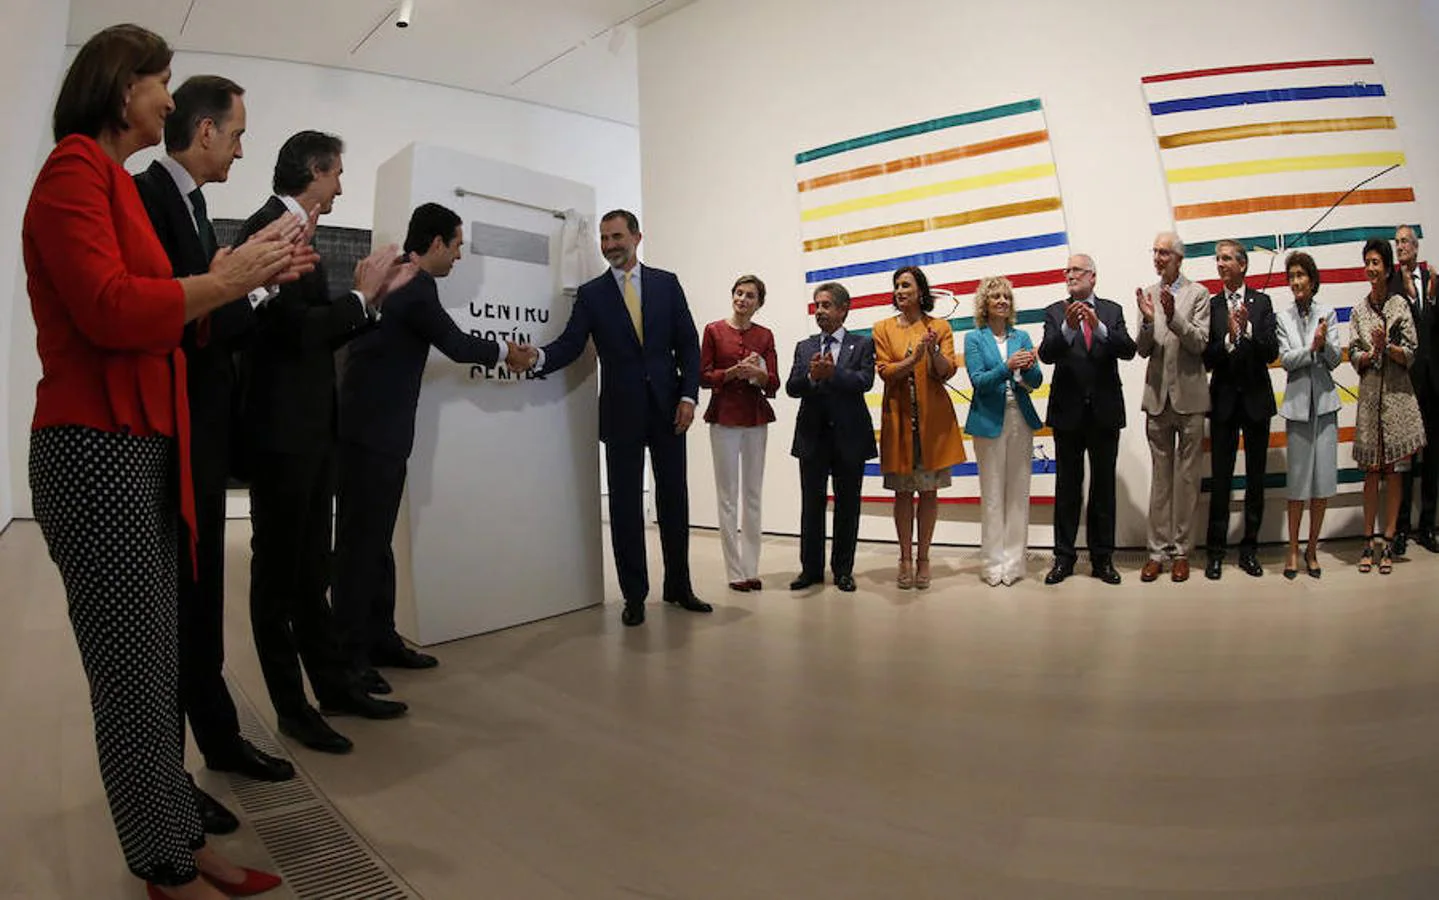 Los Reyes Felipe y Letizia descubren la placa conmemorativa durante la inauguración del Centro Botín, el nuevo centro de arte que pone en marcha la Fundación Botín bajo un diseño de Renzo Piano y sobre la bahía de Santander.